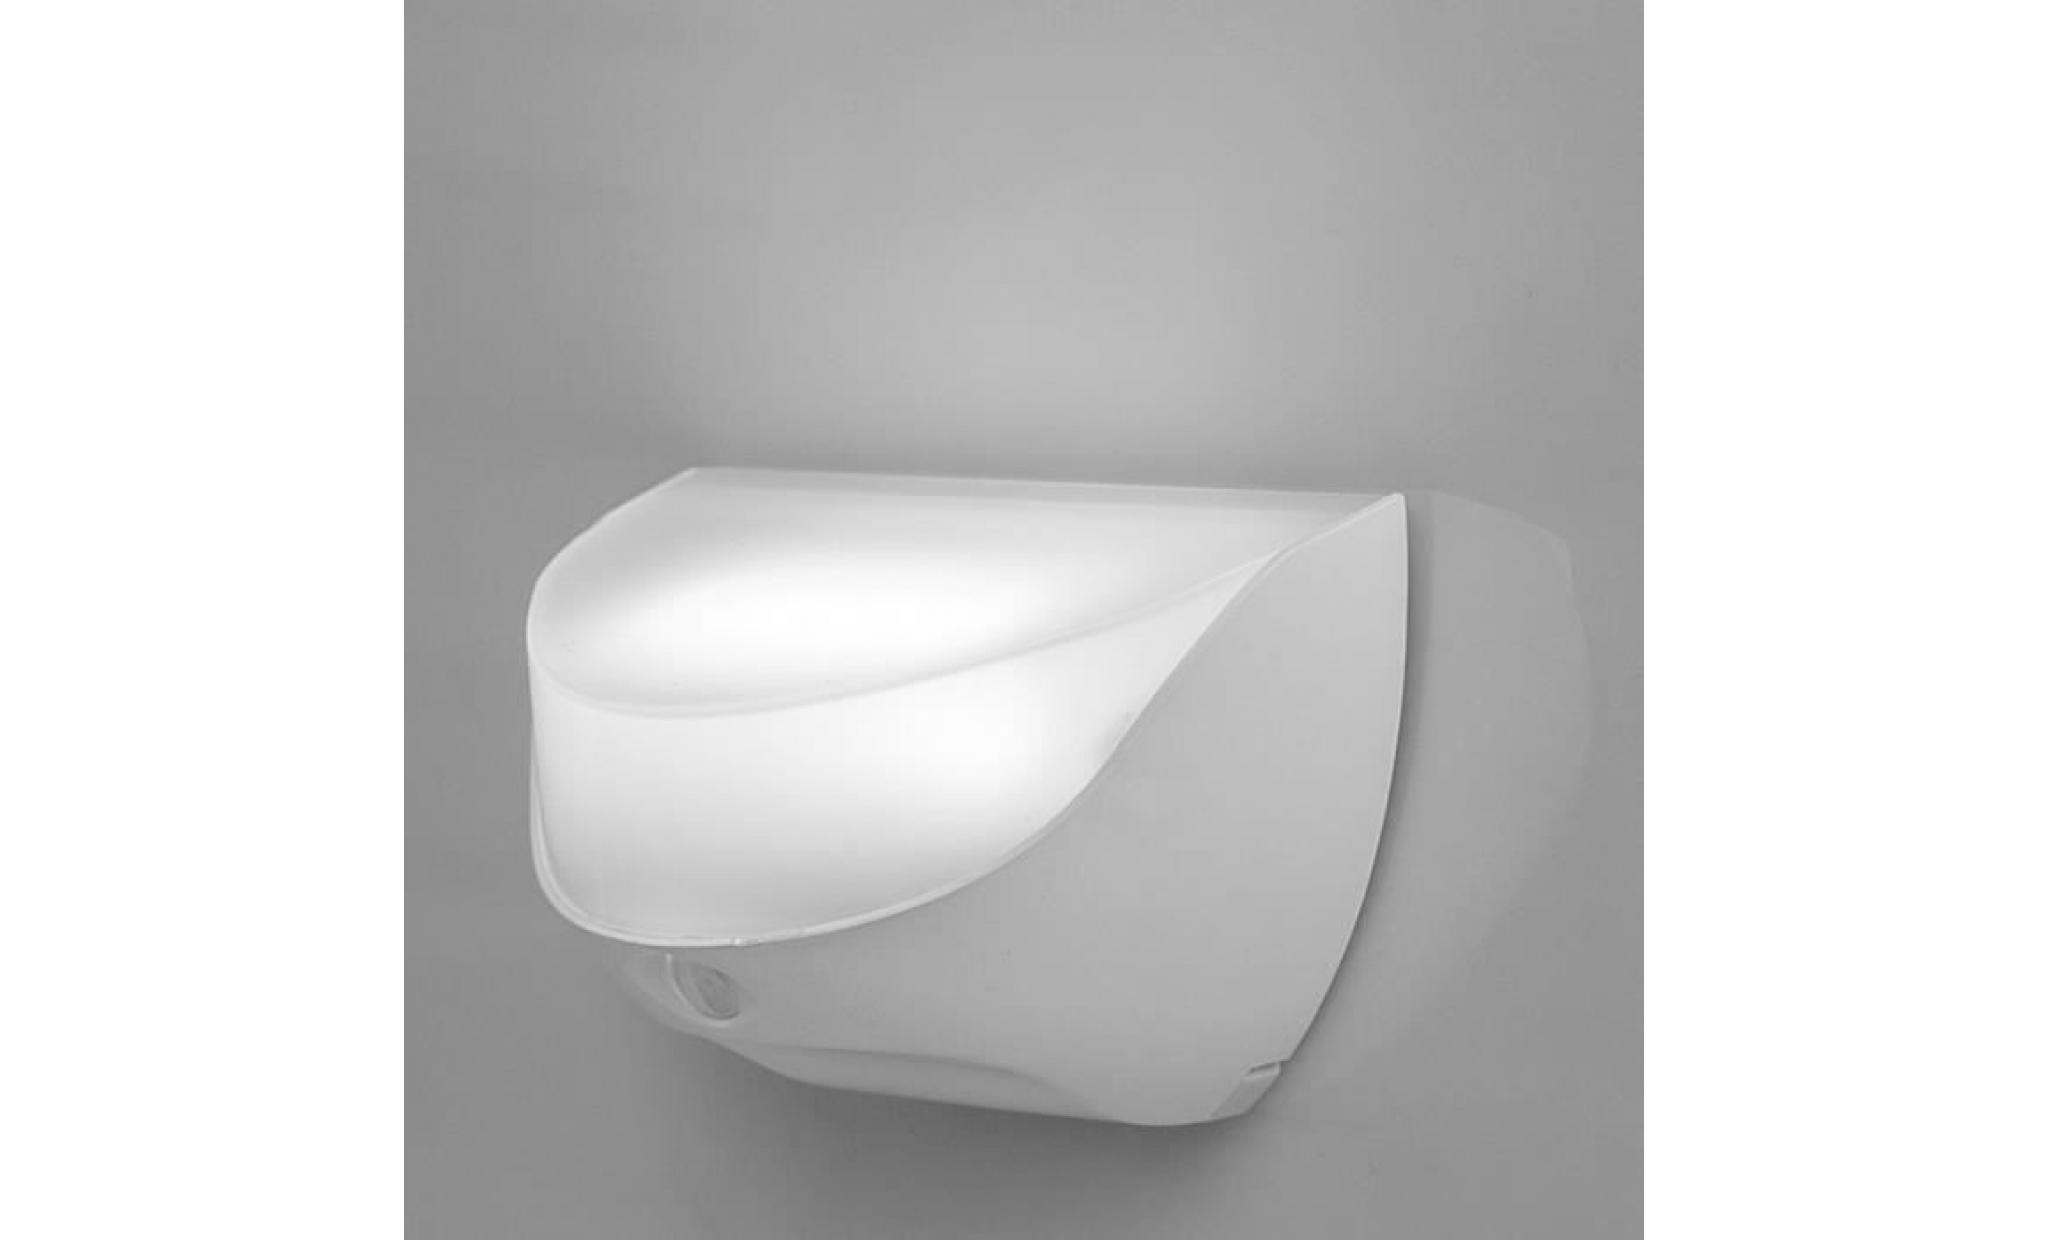 applique exterieure usb rechargeable étanche corridor lumière de nuit corps capteur infrarouge intelligente maison lumières blanc pas cher